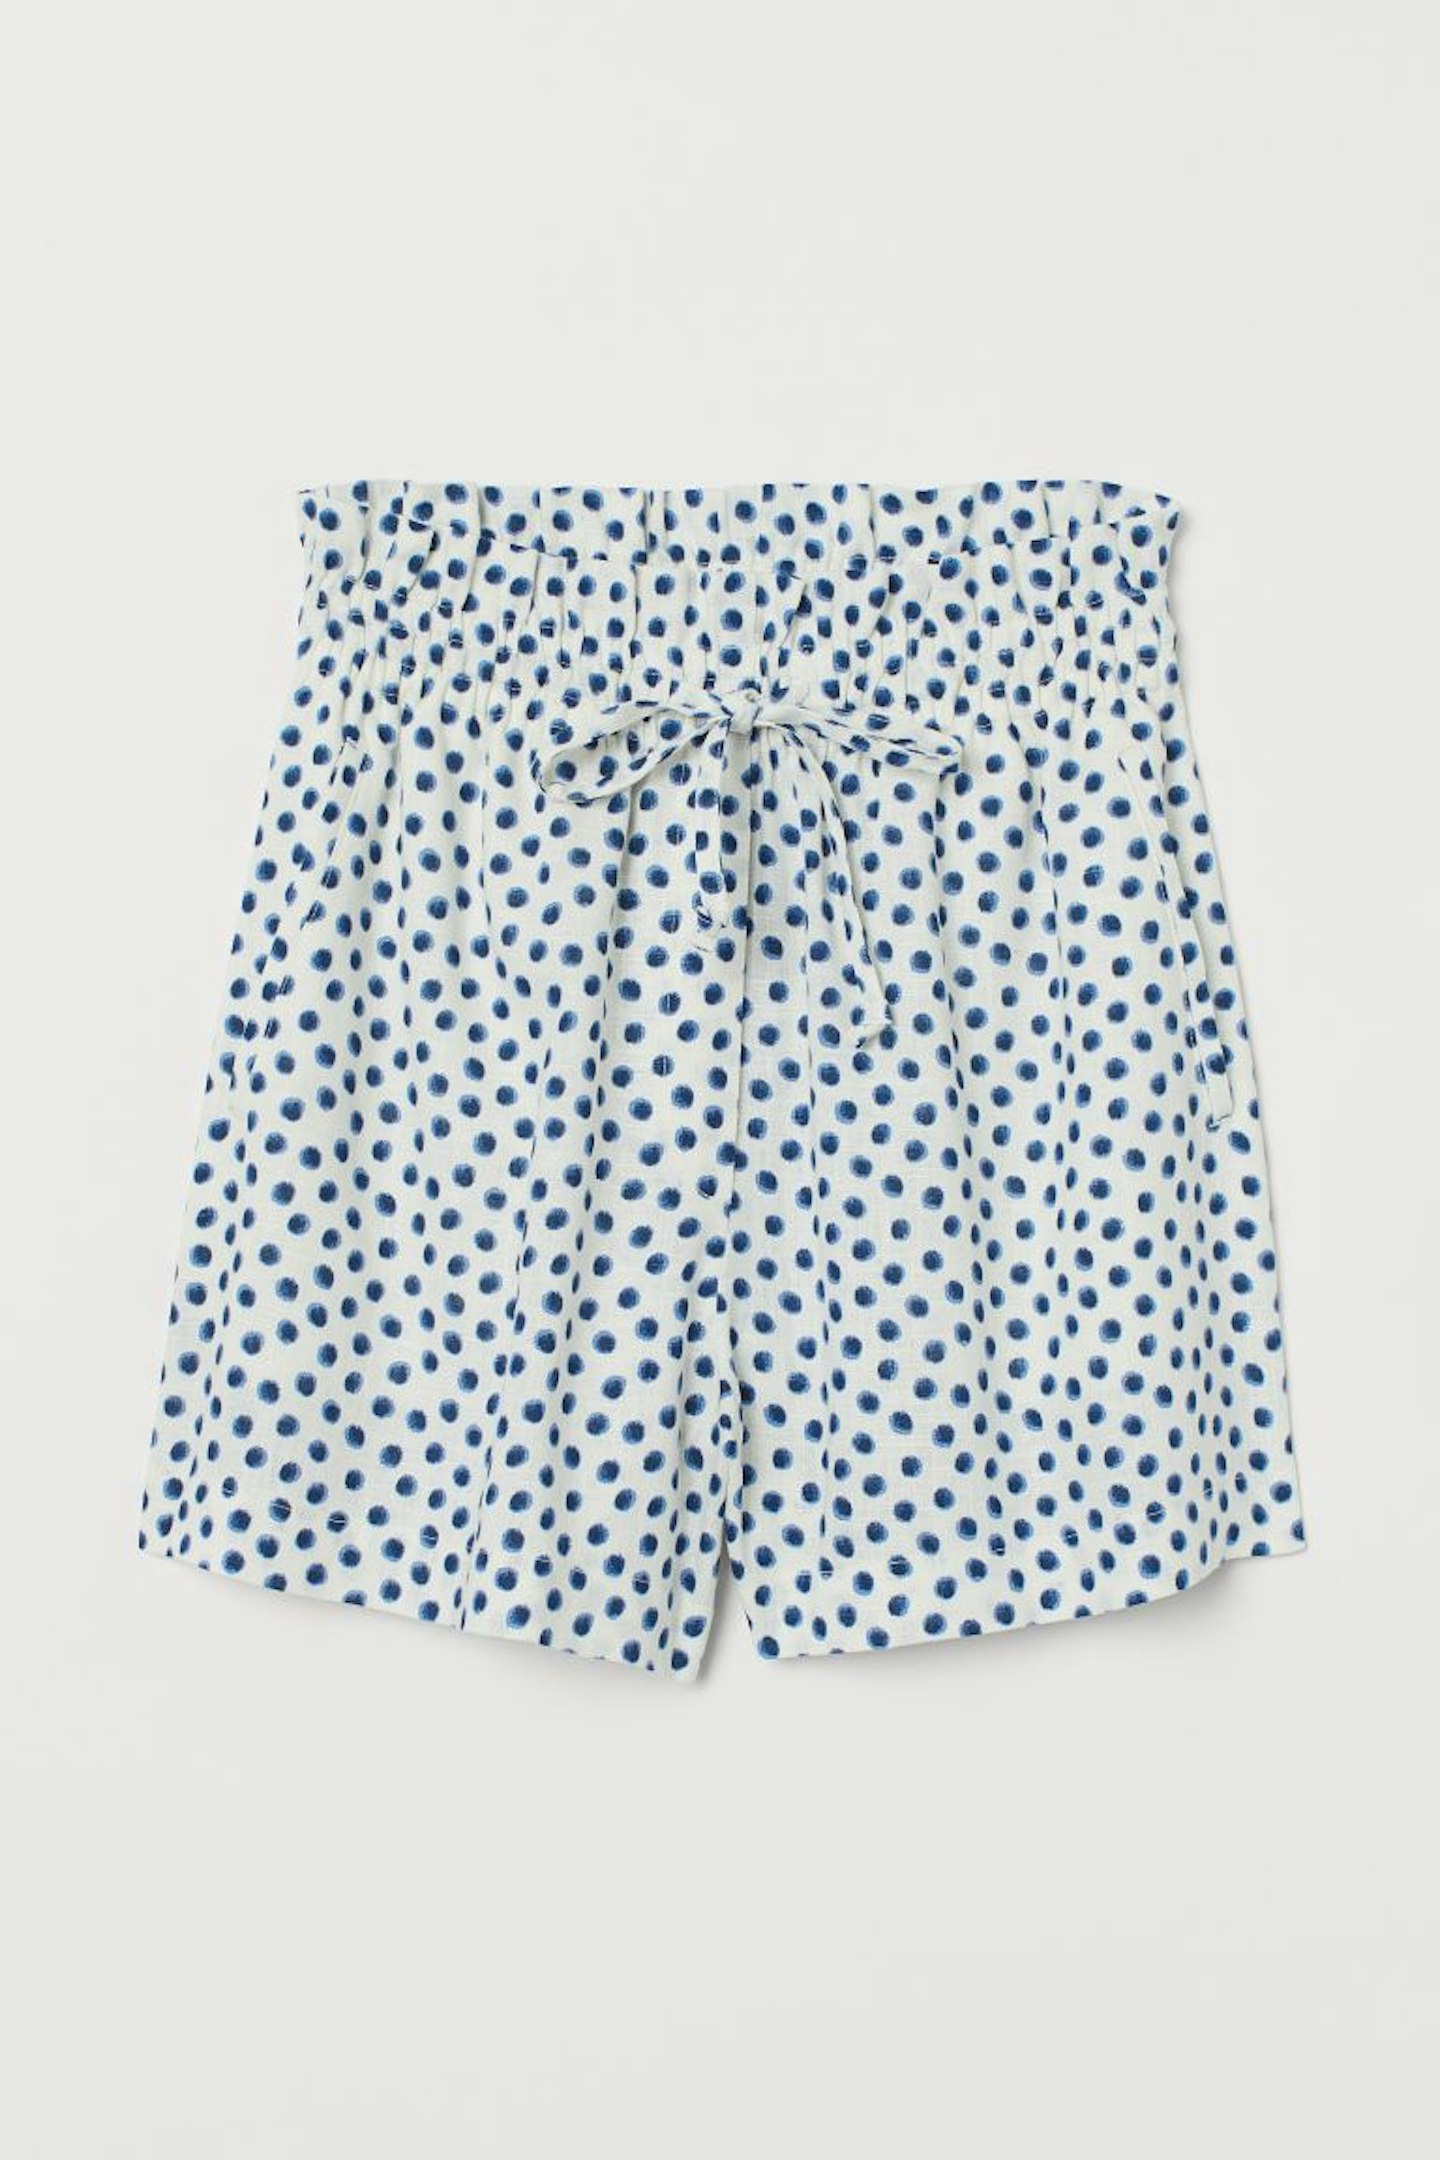 H&M, Linen-Blend Polka Dot Shorts, £14.99